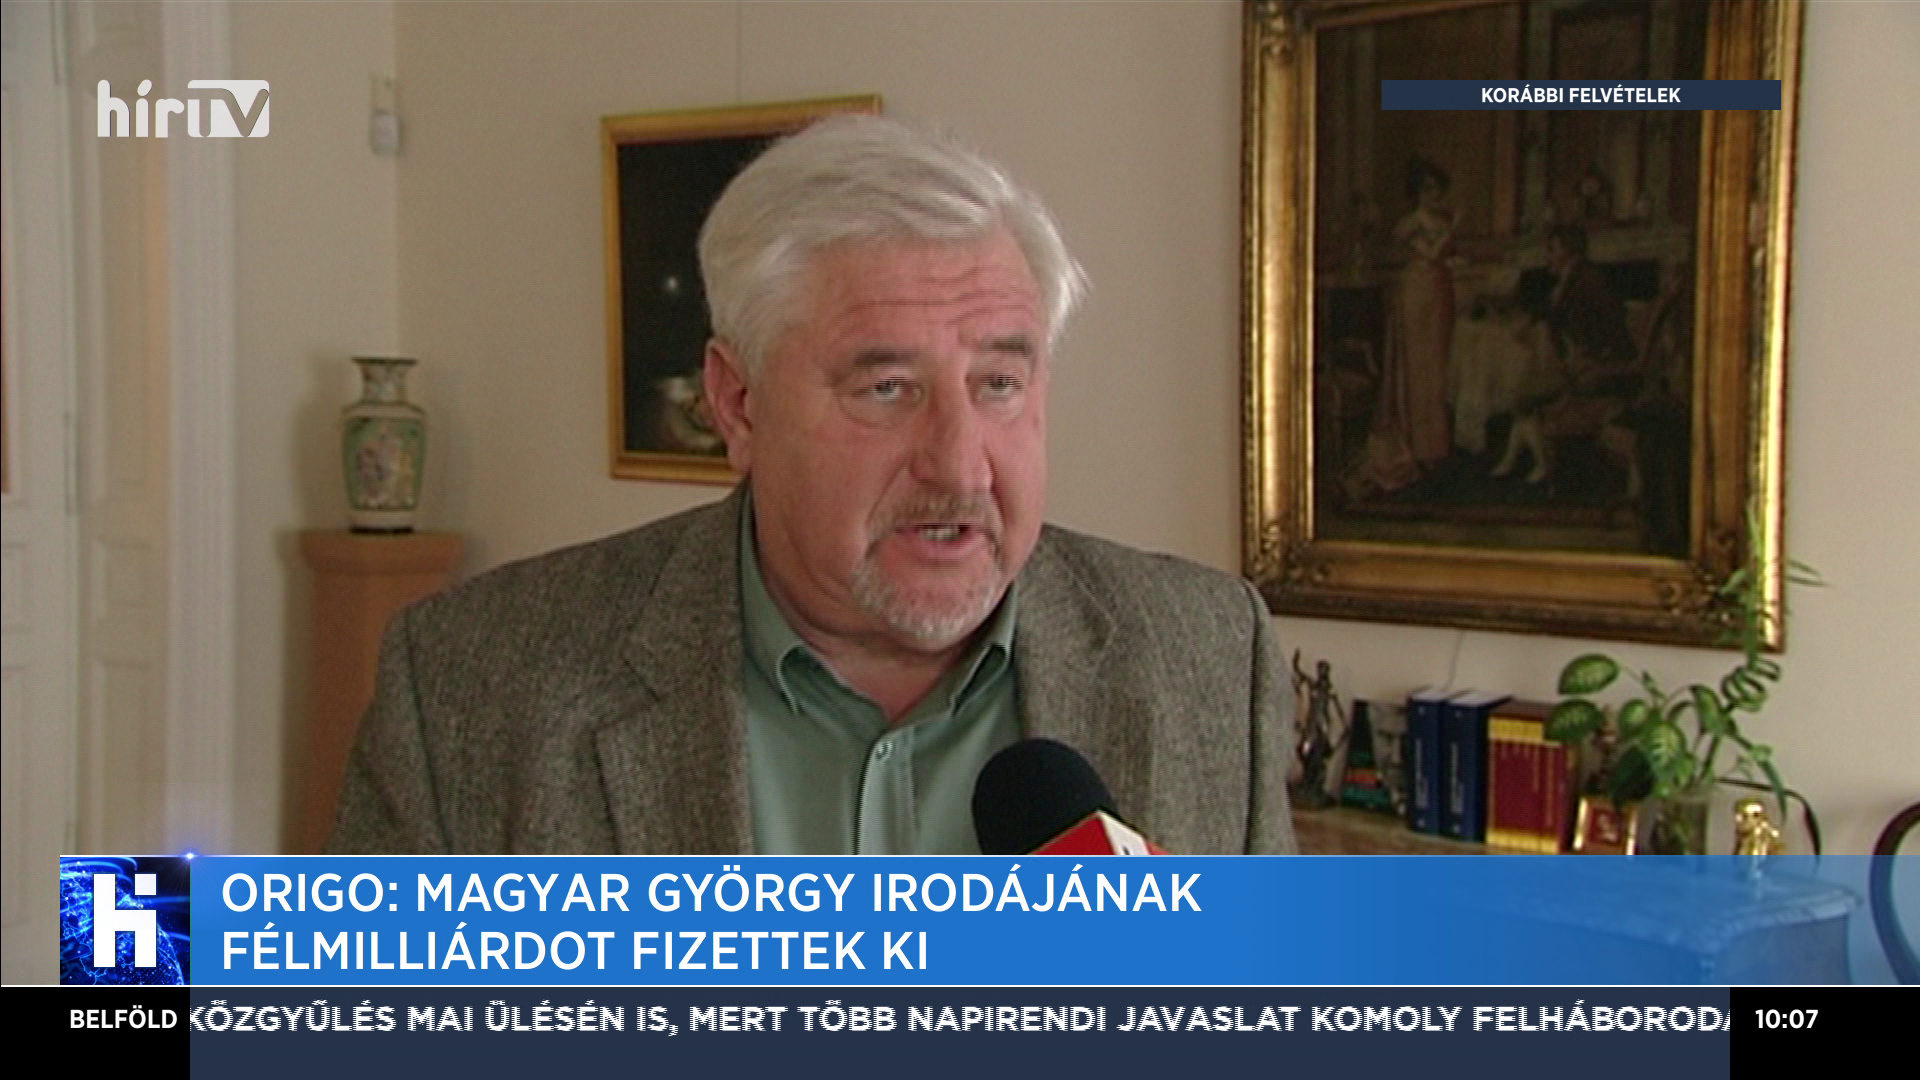 Origo: Magyar György irodájának félmilliárdot fizettek ki